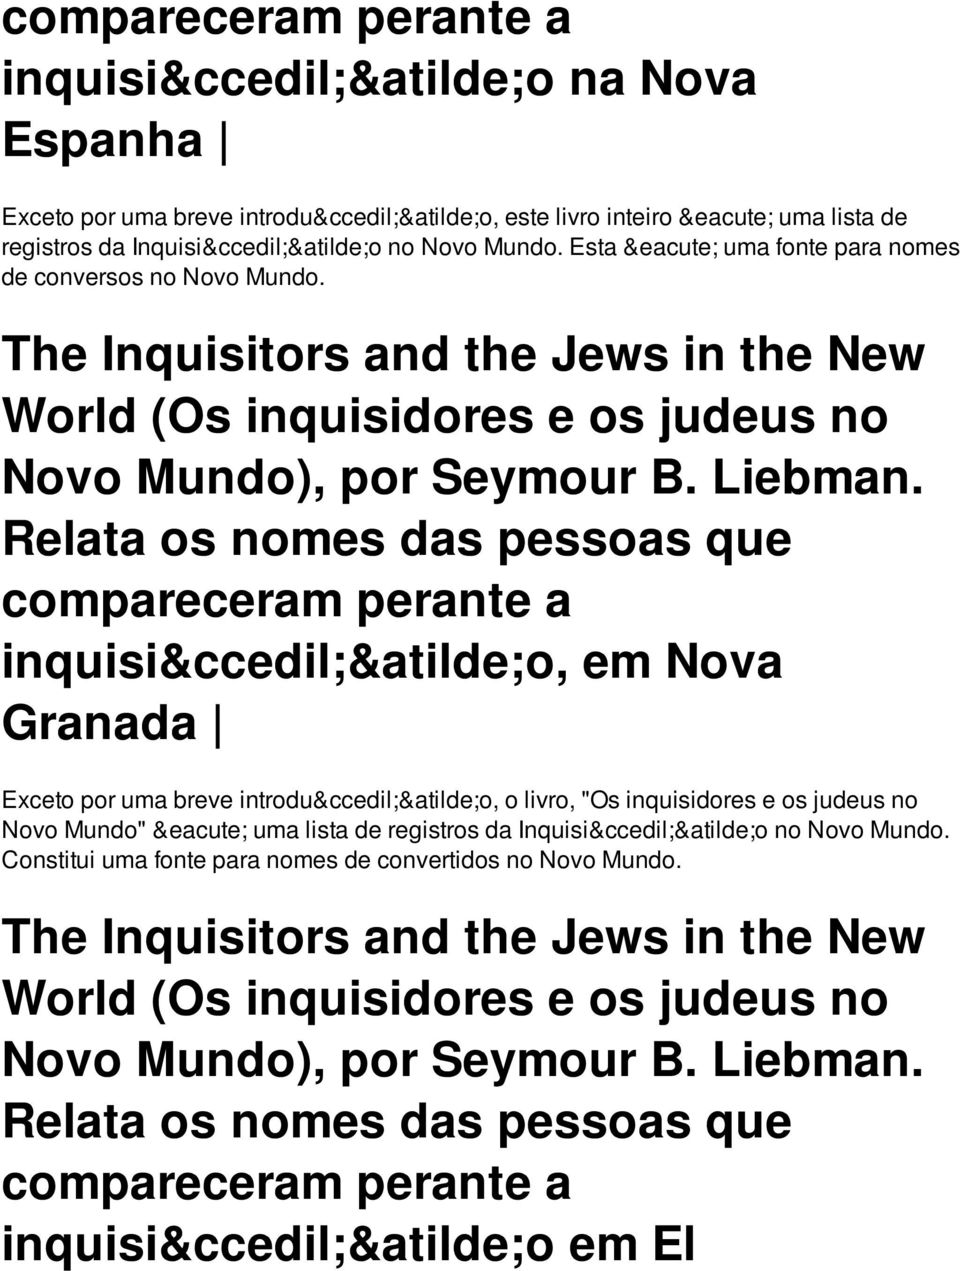 Relata os nomes das pessoas que compareceram perante a inquisição, em Nova Granada Exceto por uma breve introdução, o livro, "Os inquisidores e os judeus no Novo Mundo" é uma lista de registros da